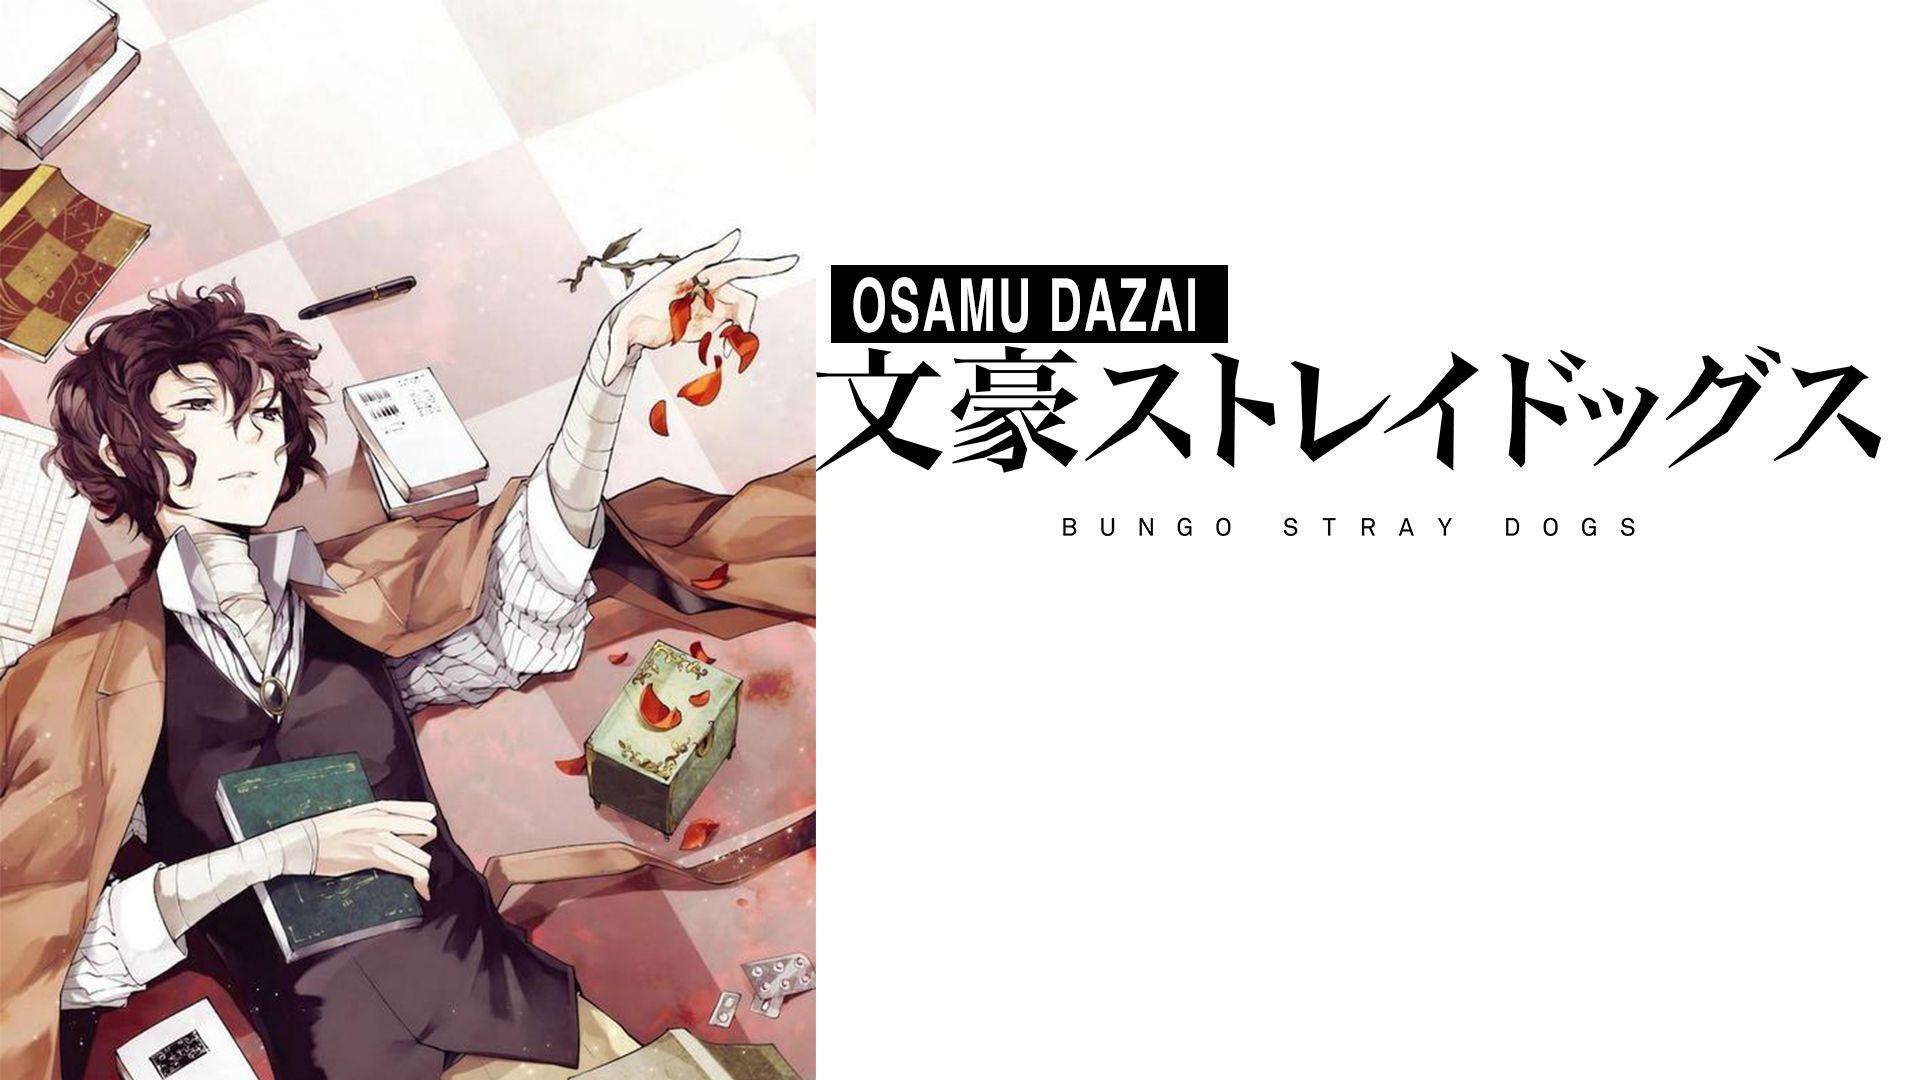 Osamu Dazai Bungou Stray Dogs HD Wallpaper. Dazai bungou